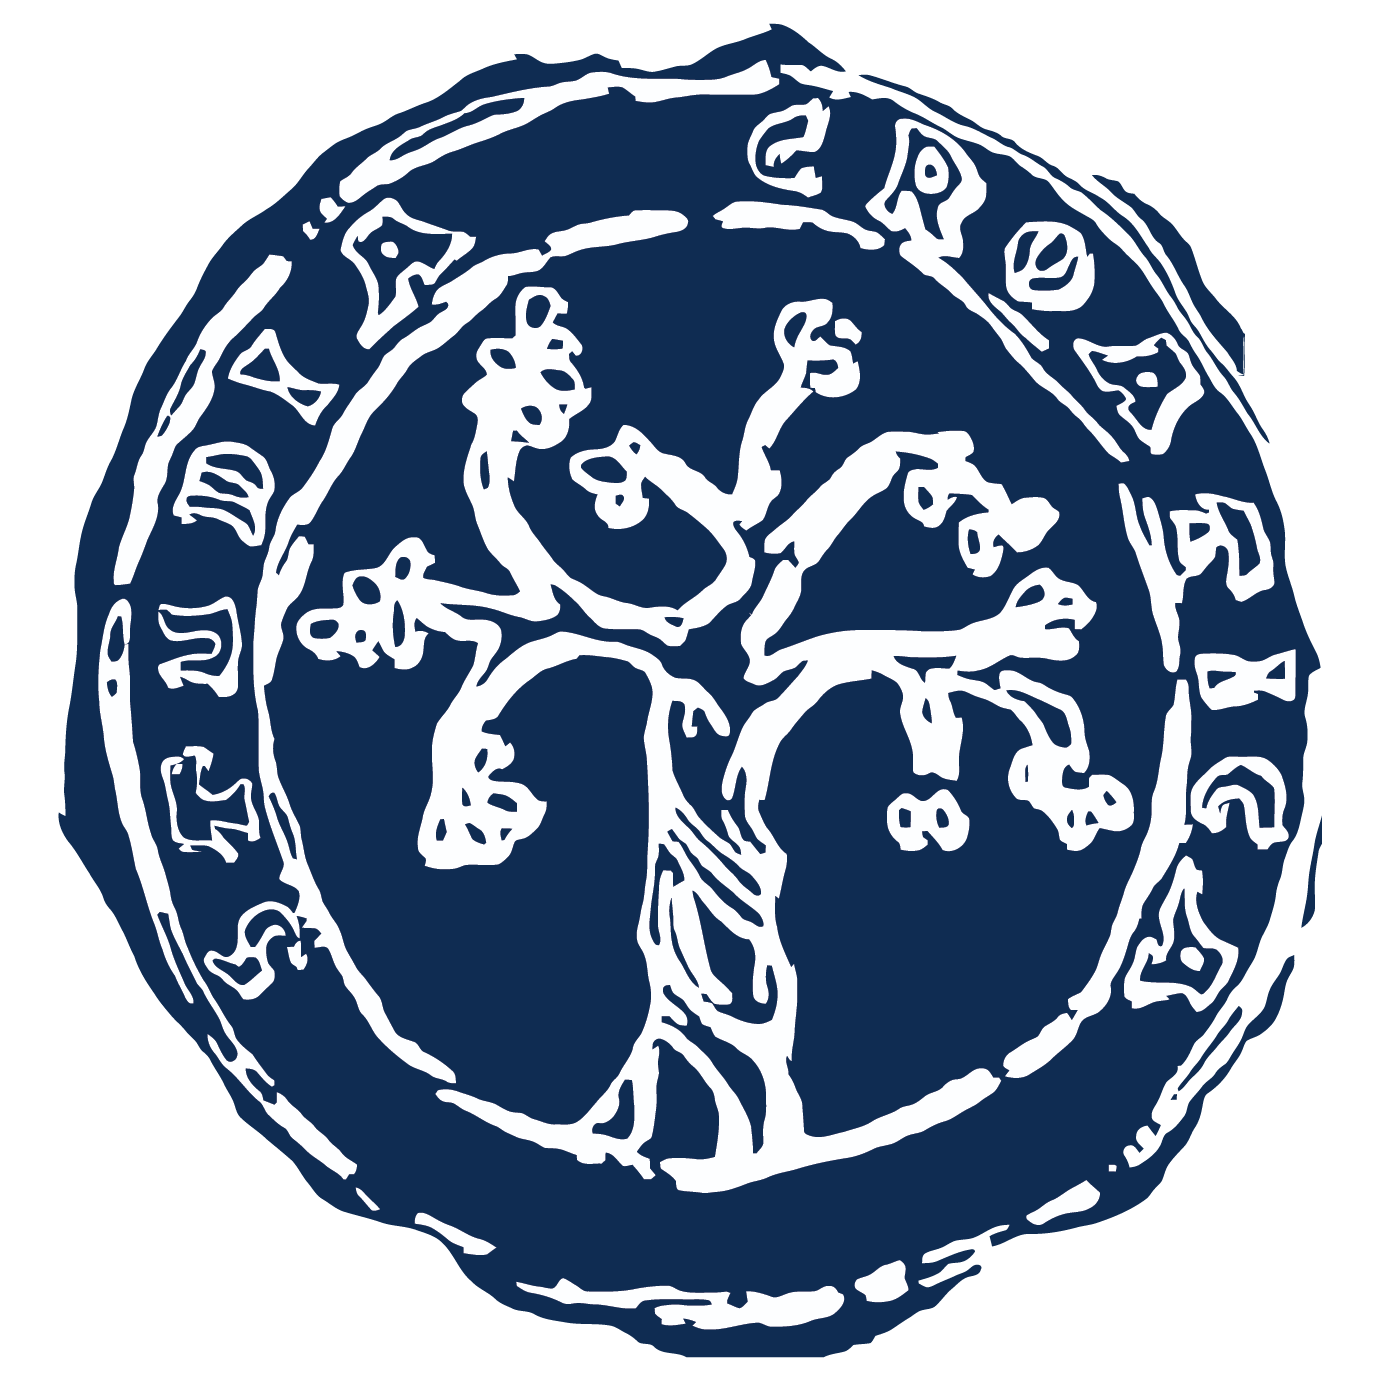 FHS logo, pozitiv